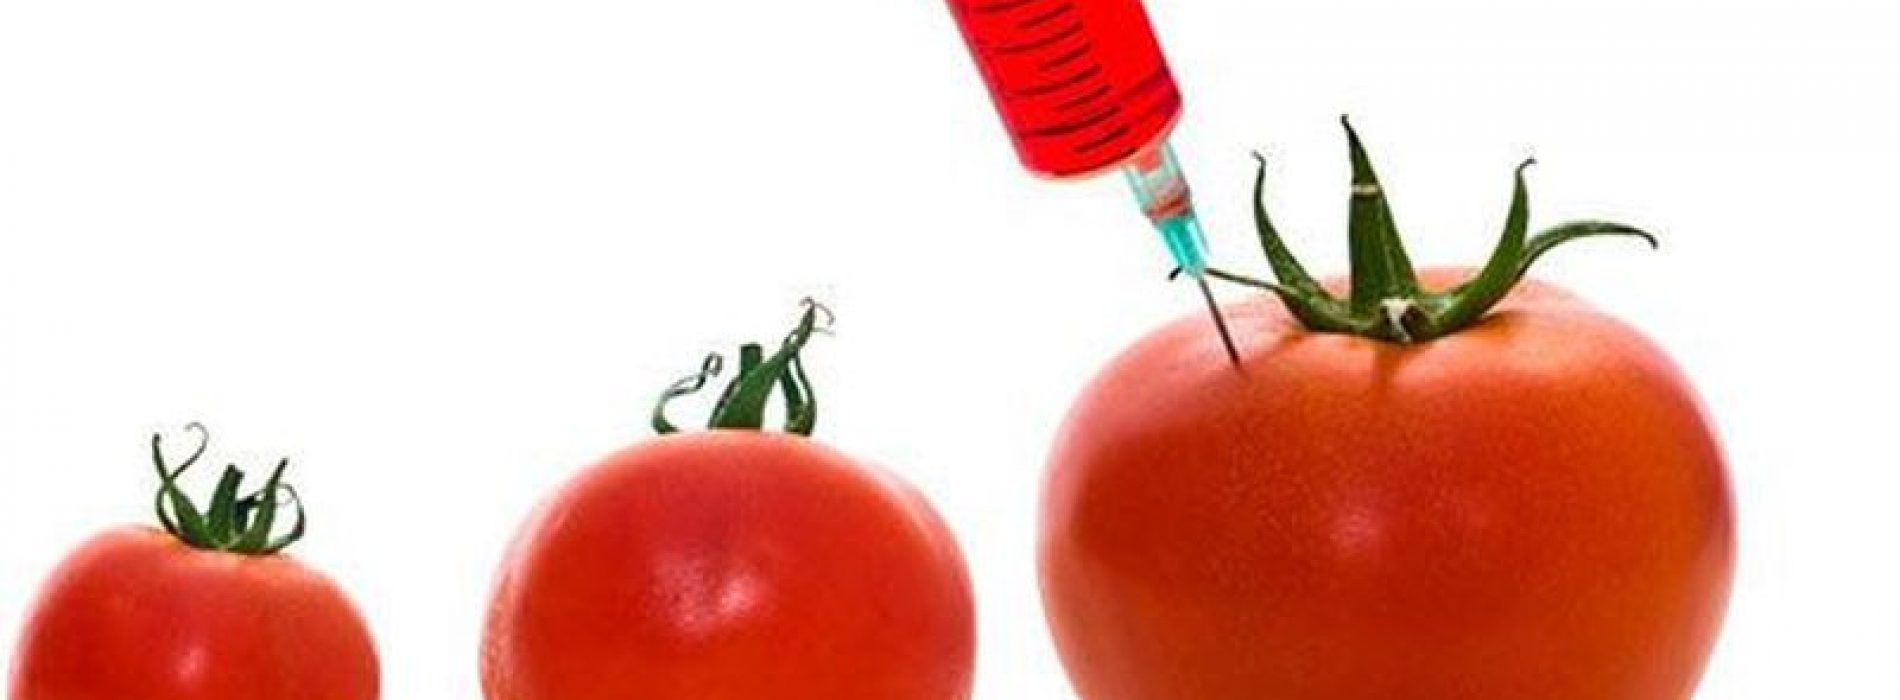 Weet je nog dat we je waarschuwden voor GGO-tomaten? Wetenschappers zeggen nu dat ze waarschijnlijk niet veilig zijn, laat staan gezond